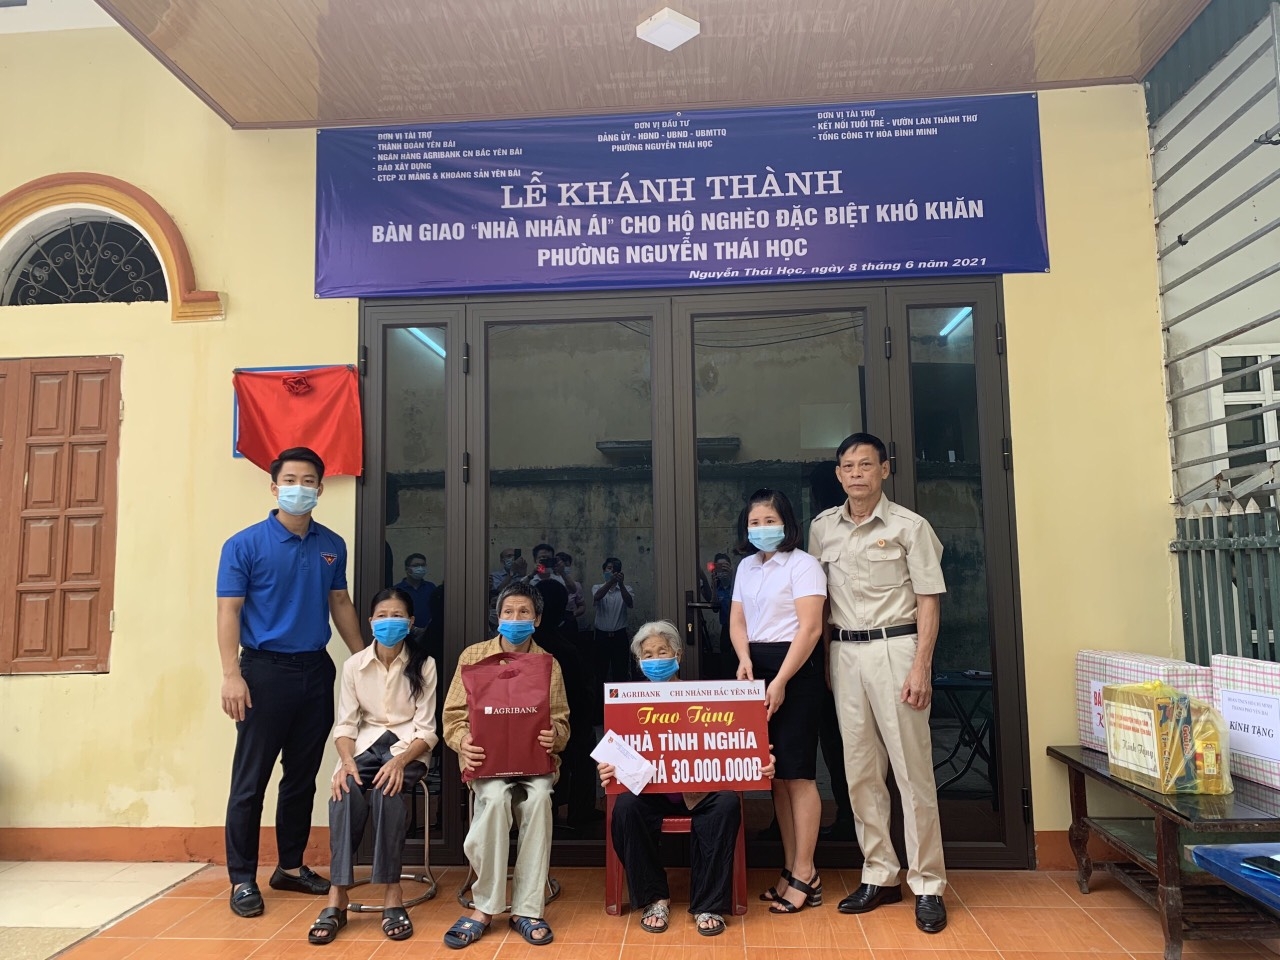 Báo Xây dựng bàn giao nhà nhân ái cho hộ nghèo phường Nguyễn Thái Học, thành phố Yên Bái